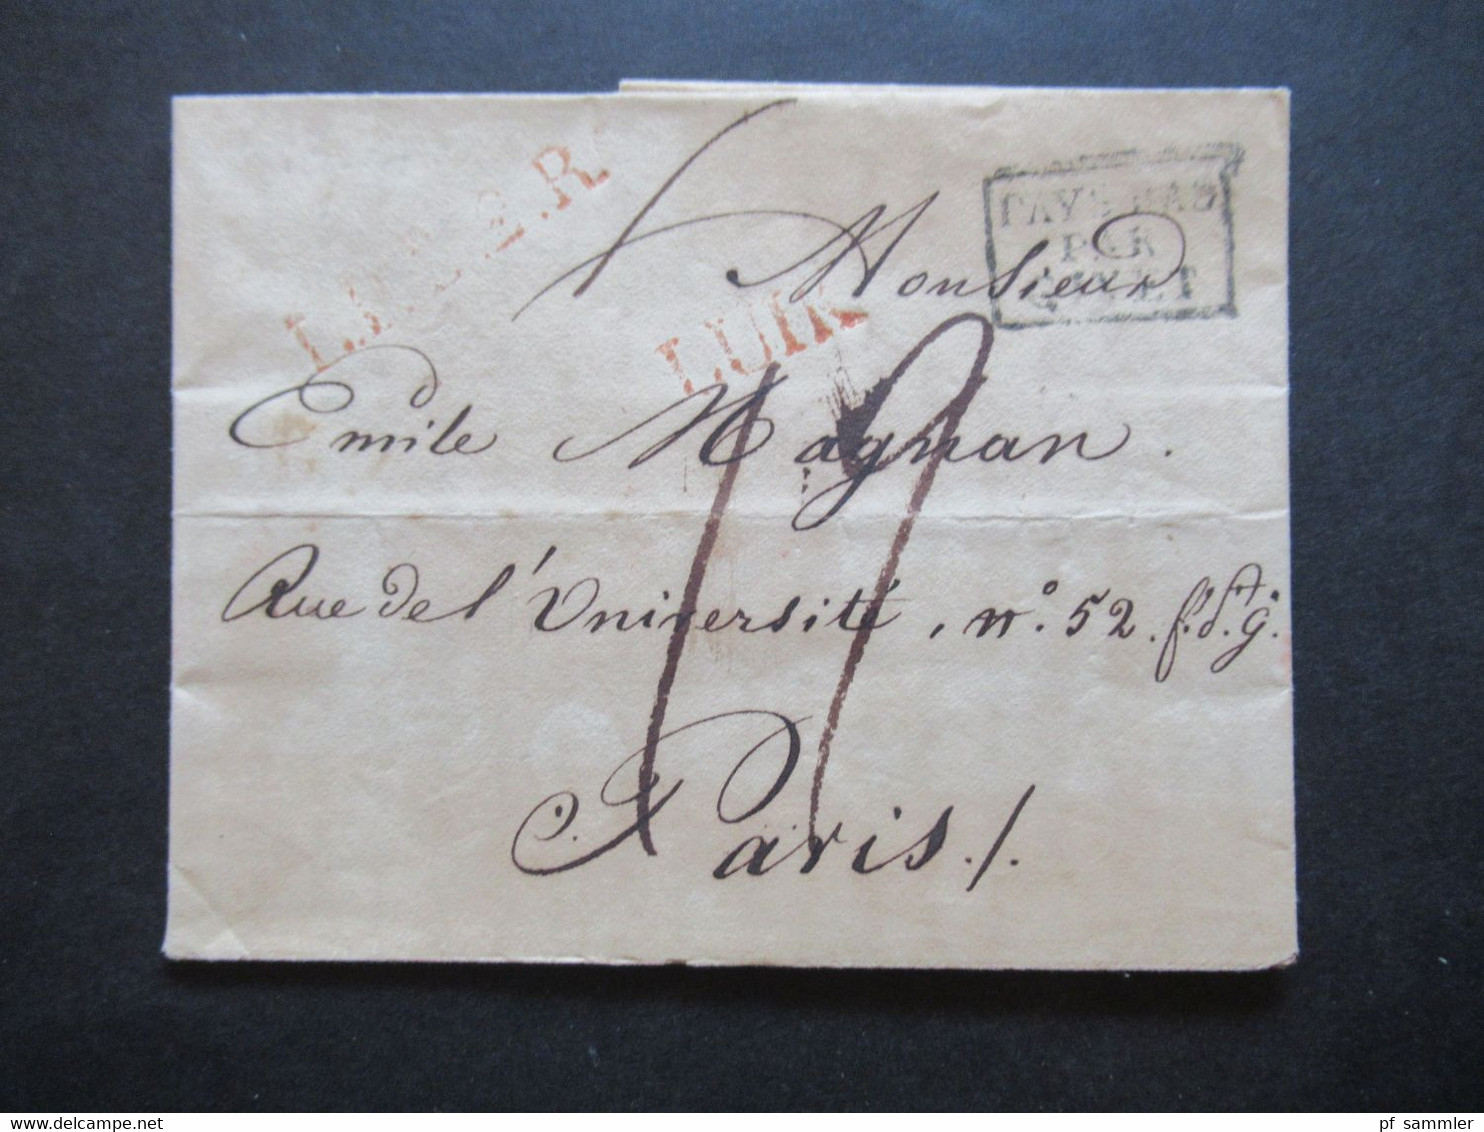 Belgien 11.12.1824 Ra3 Pays Bas Par Givet Liege - Paris Rue Del Universität No 52 Rote Stempel U.A. L1 Luik / Lüttich - 1815-1830 (Période Hollandaise)